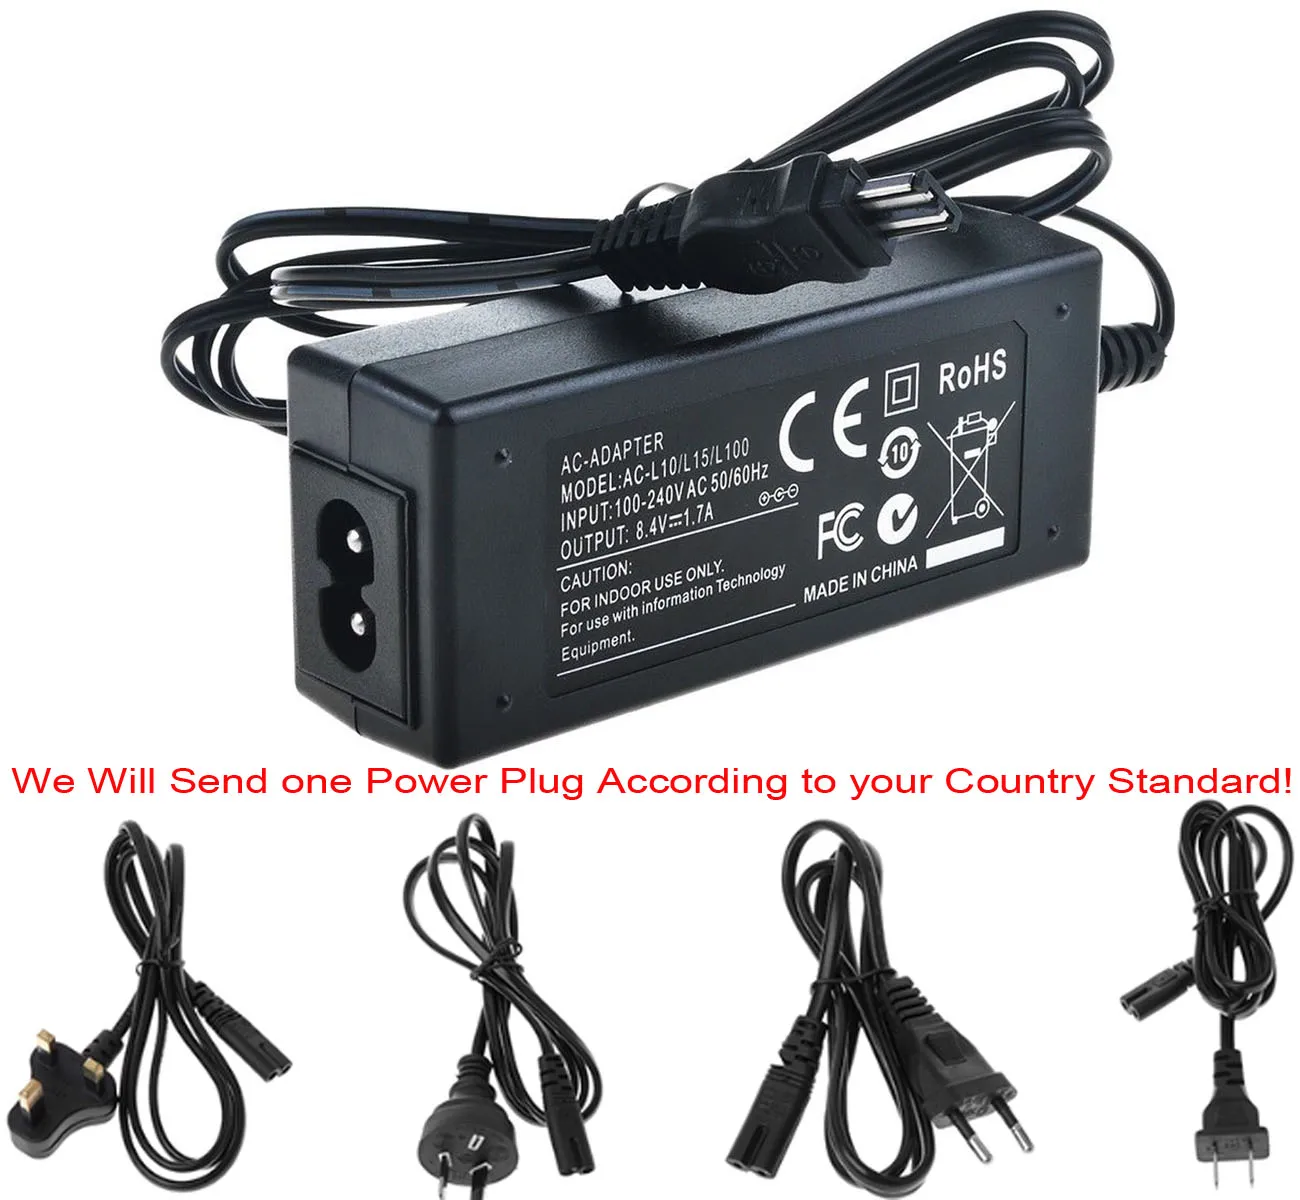 AC Adaptor Incarcator pentru Sony DCR-TRV510E, DCR-TRV520E, DCR-TRV530E, DCR-TRV620E, DCR-TRV720E, TRV730E, TRV740E camera Video Handycam